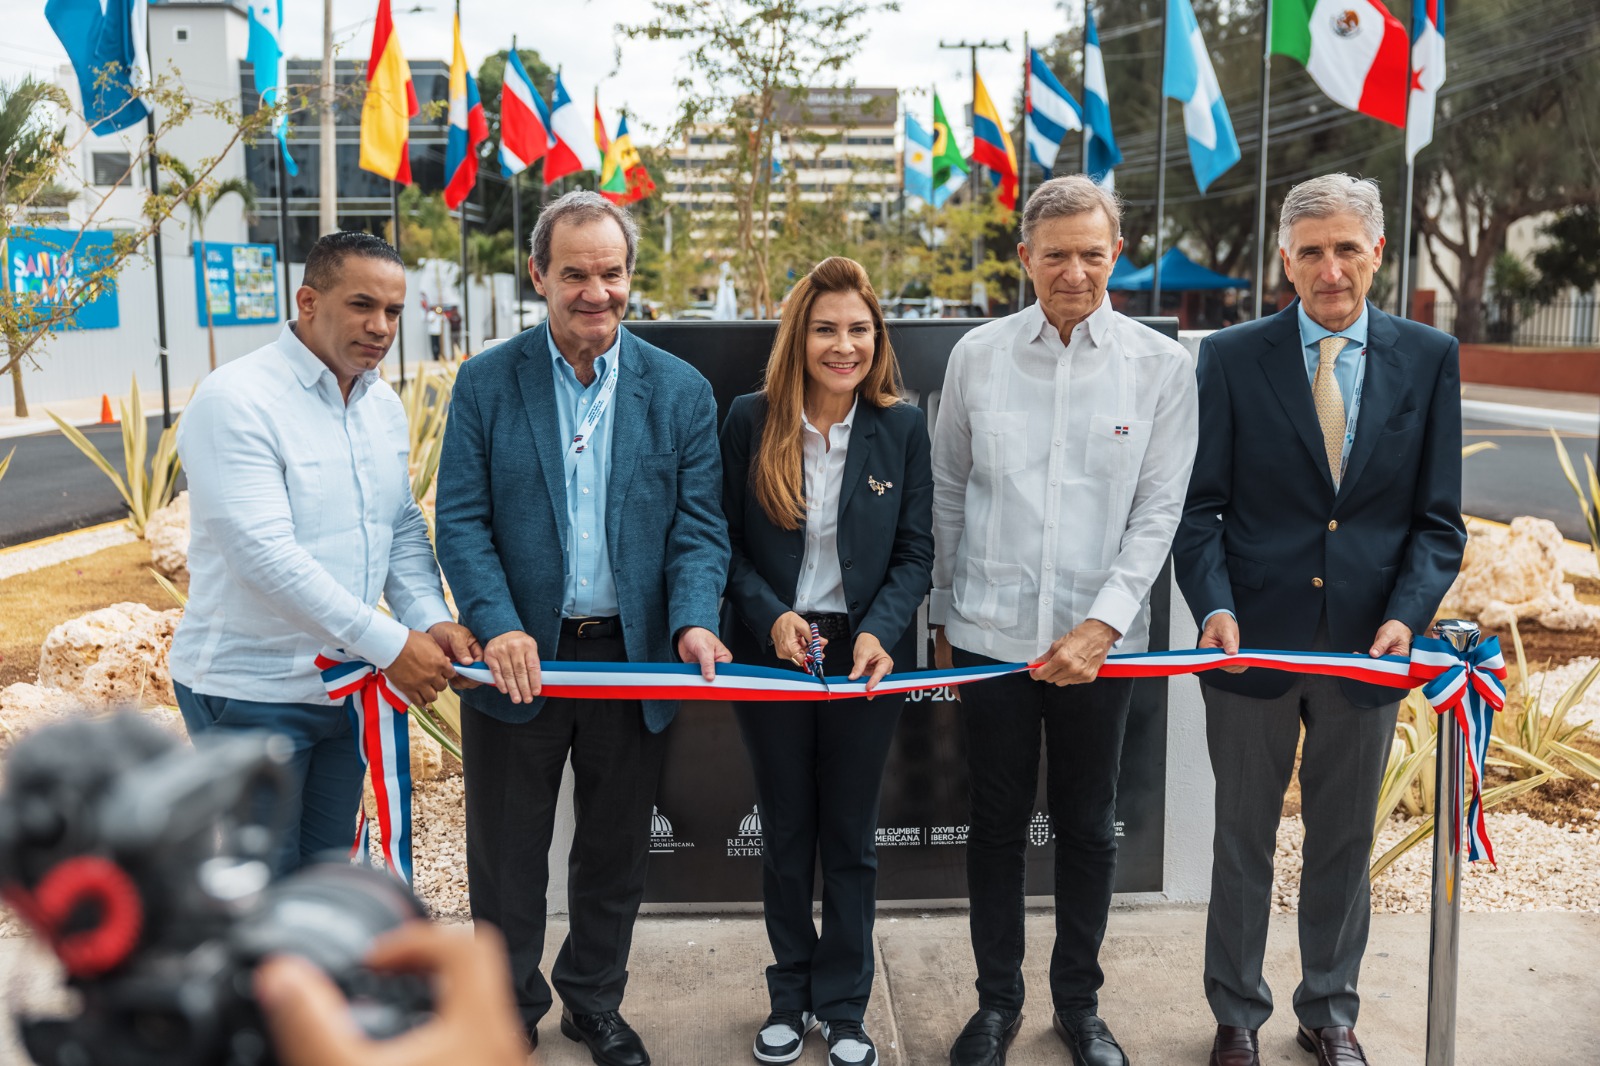 ADN y MIREX inauguran plaza en el marco de la XXVIII Cumbre Iberoamericana de Jefas y Jefes de Estado